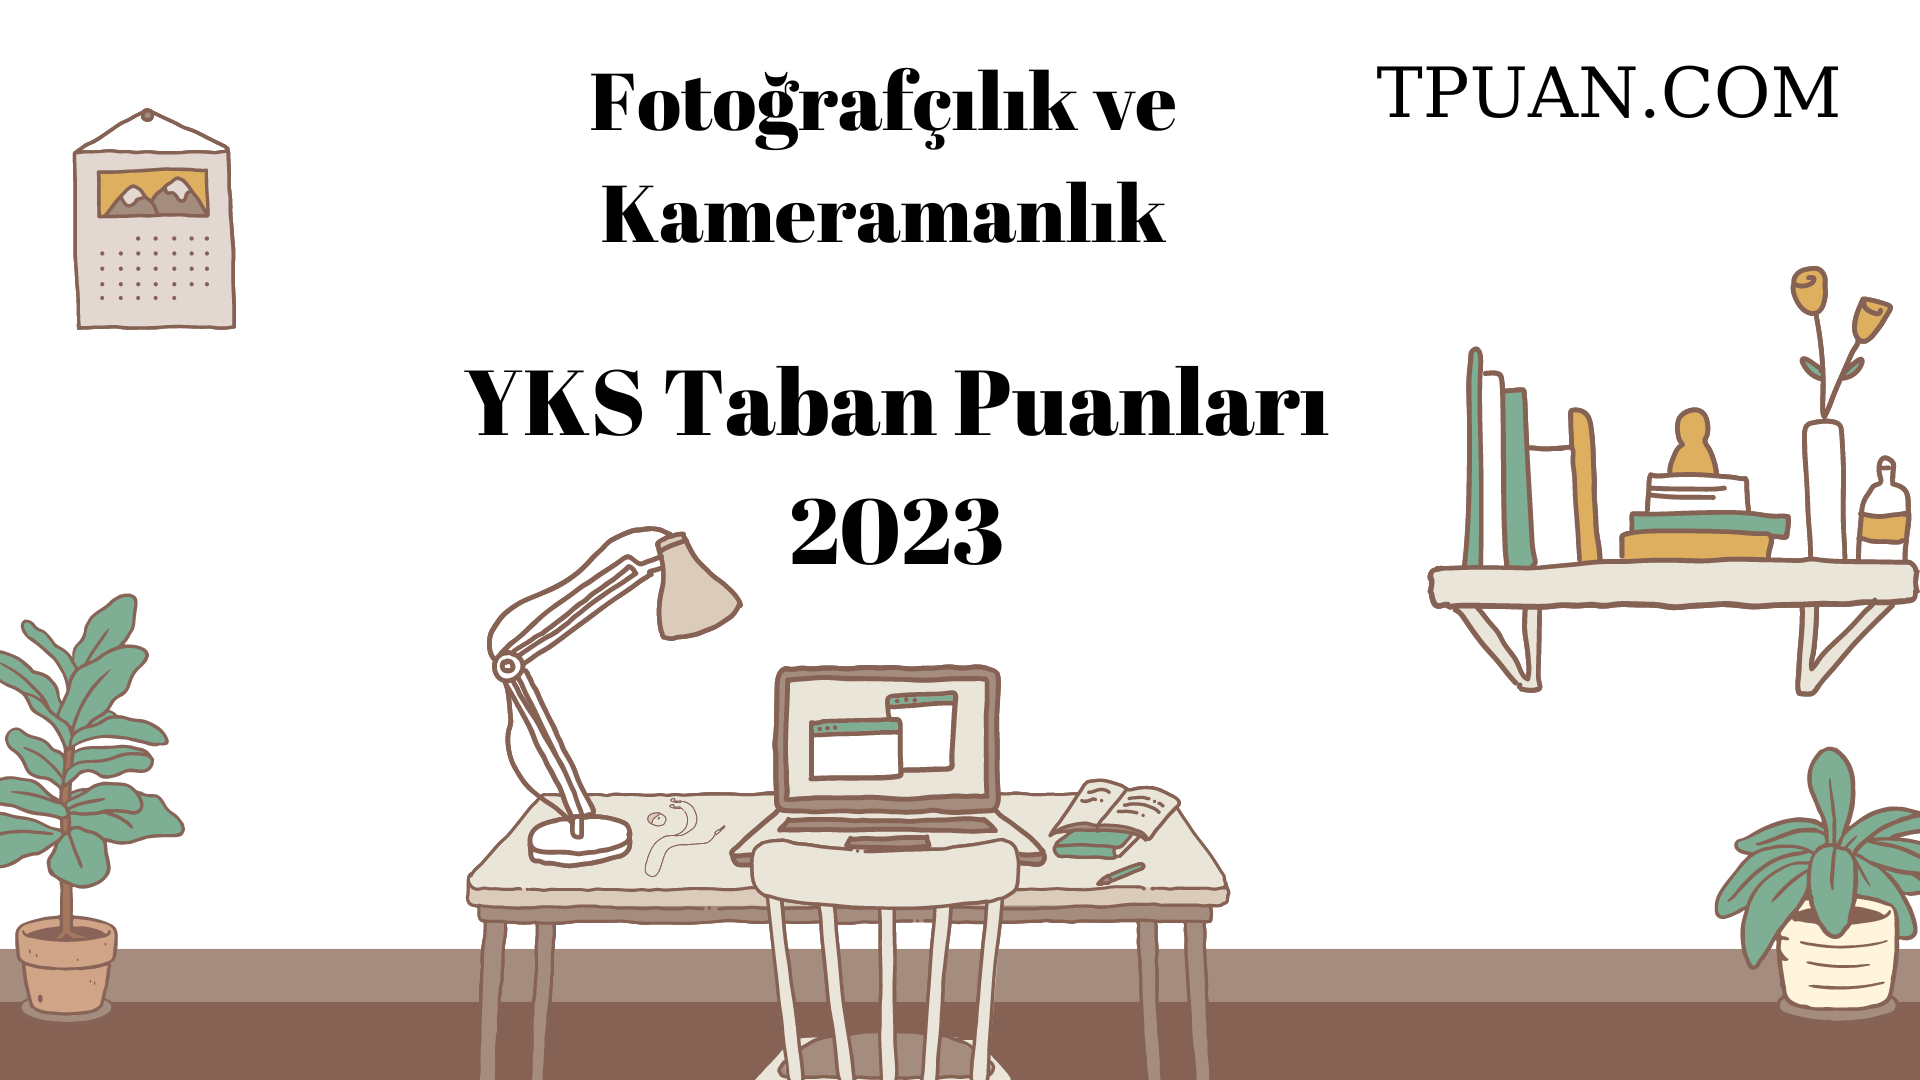  Fotoğrafçılık ve Kameramanlık YKS Taban Puanları 2023